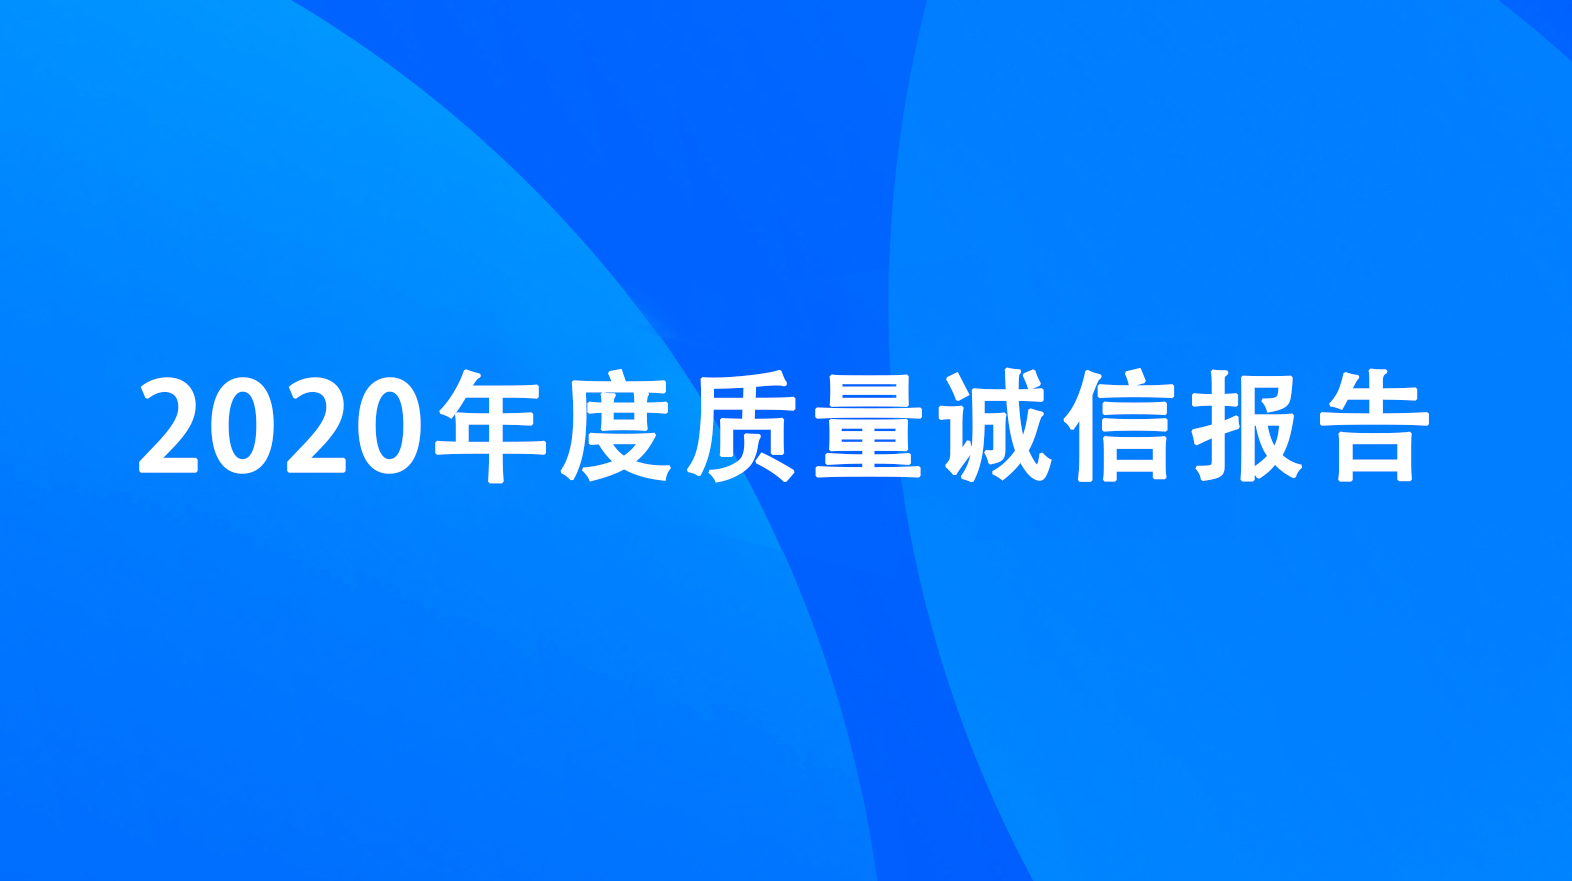 杭州升达电子有限公司2020年度质量诚信报告